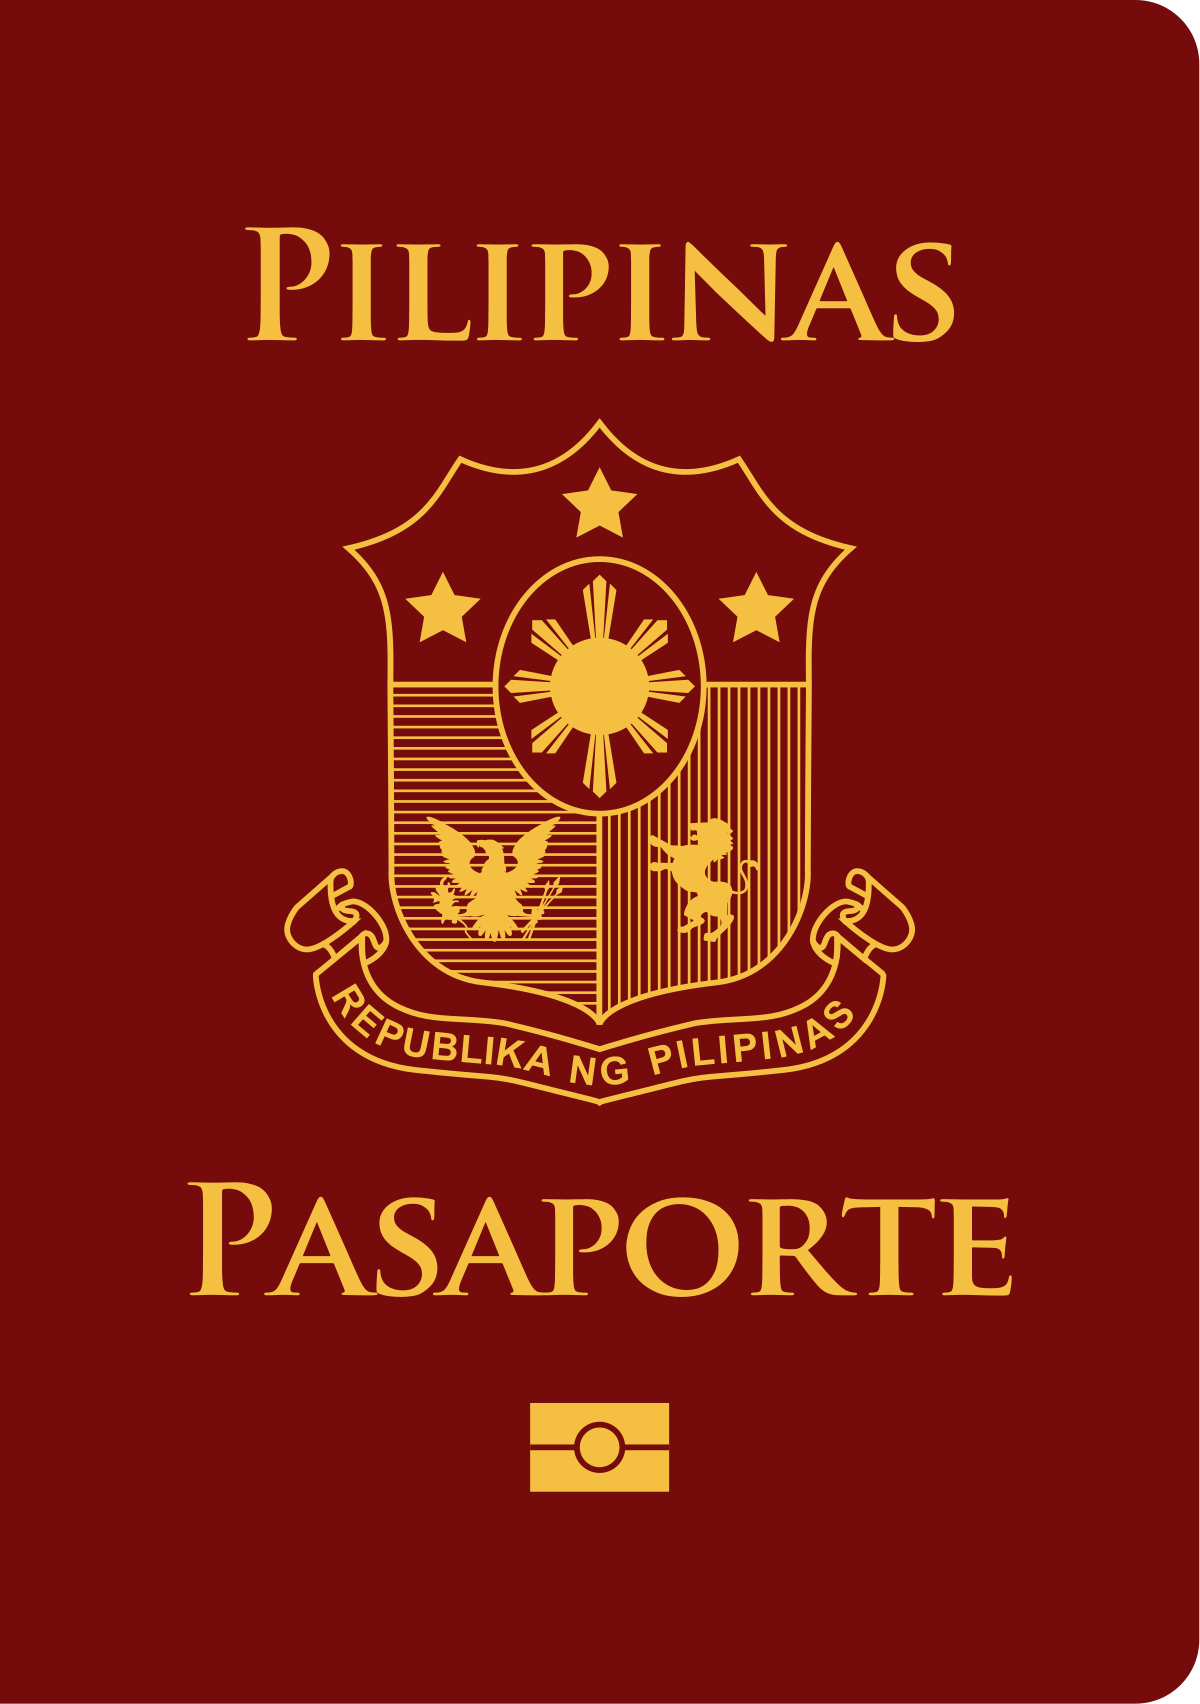 Philippine passport - Wikipedia